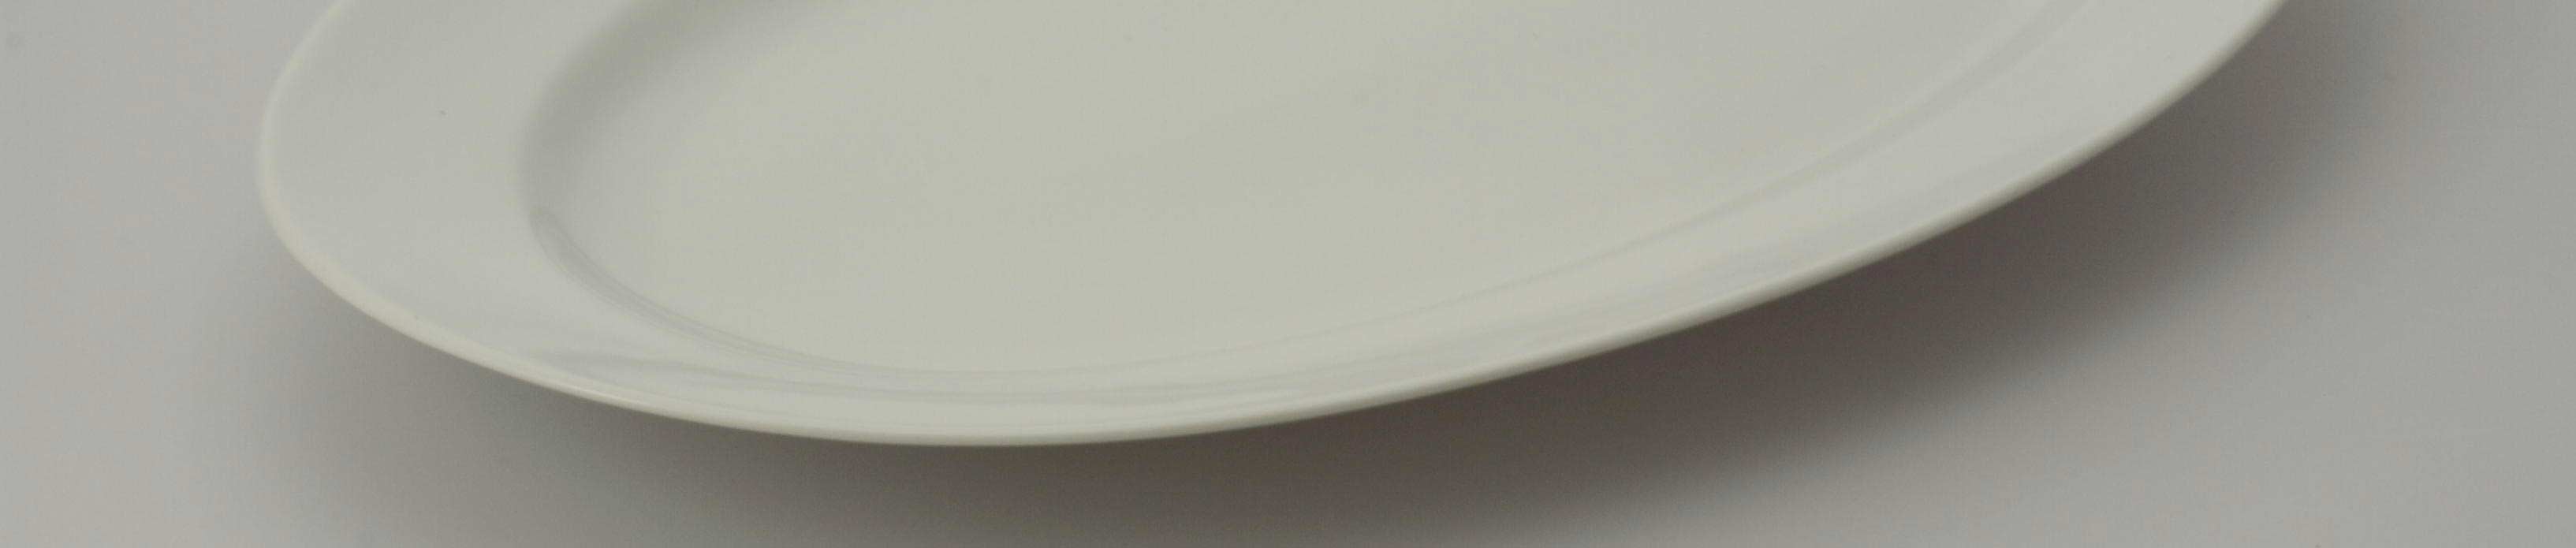 Udlejning af porceln fade - porceln-hvid - Aamand Udlejningscenter